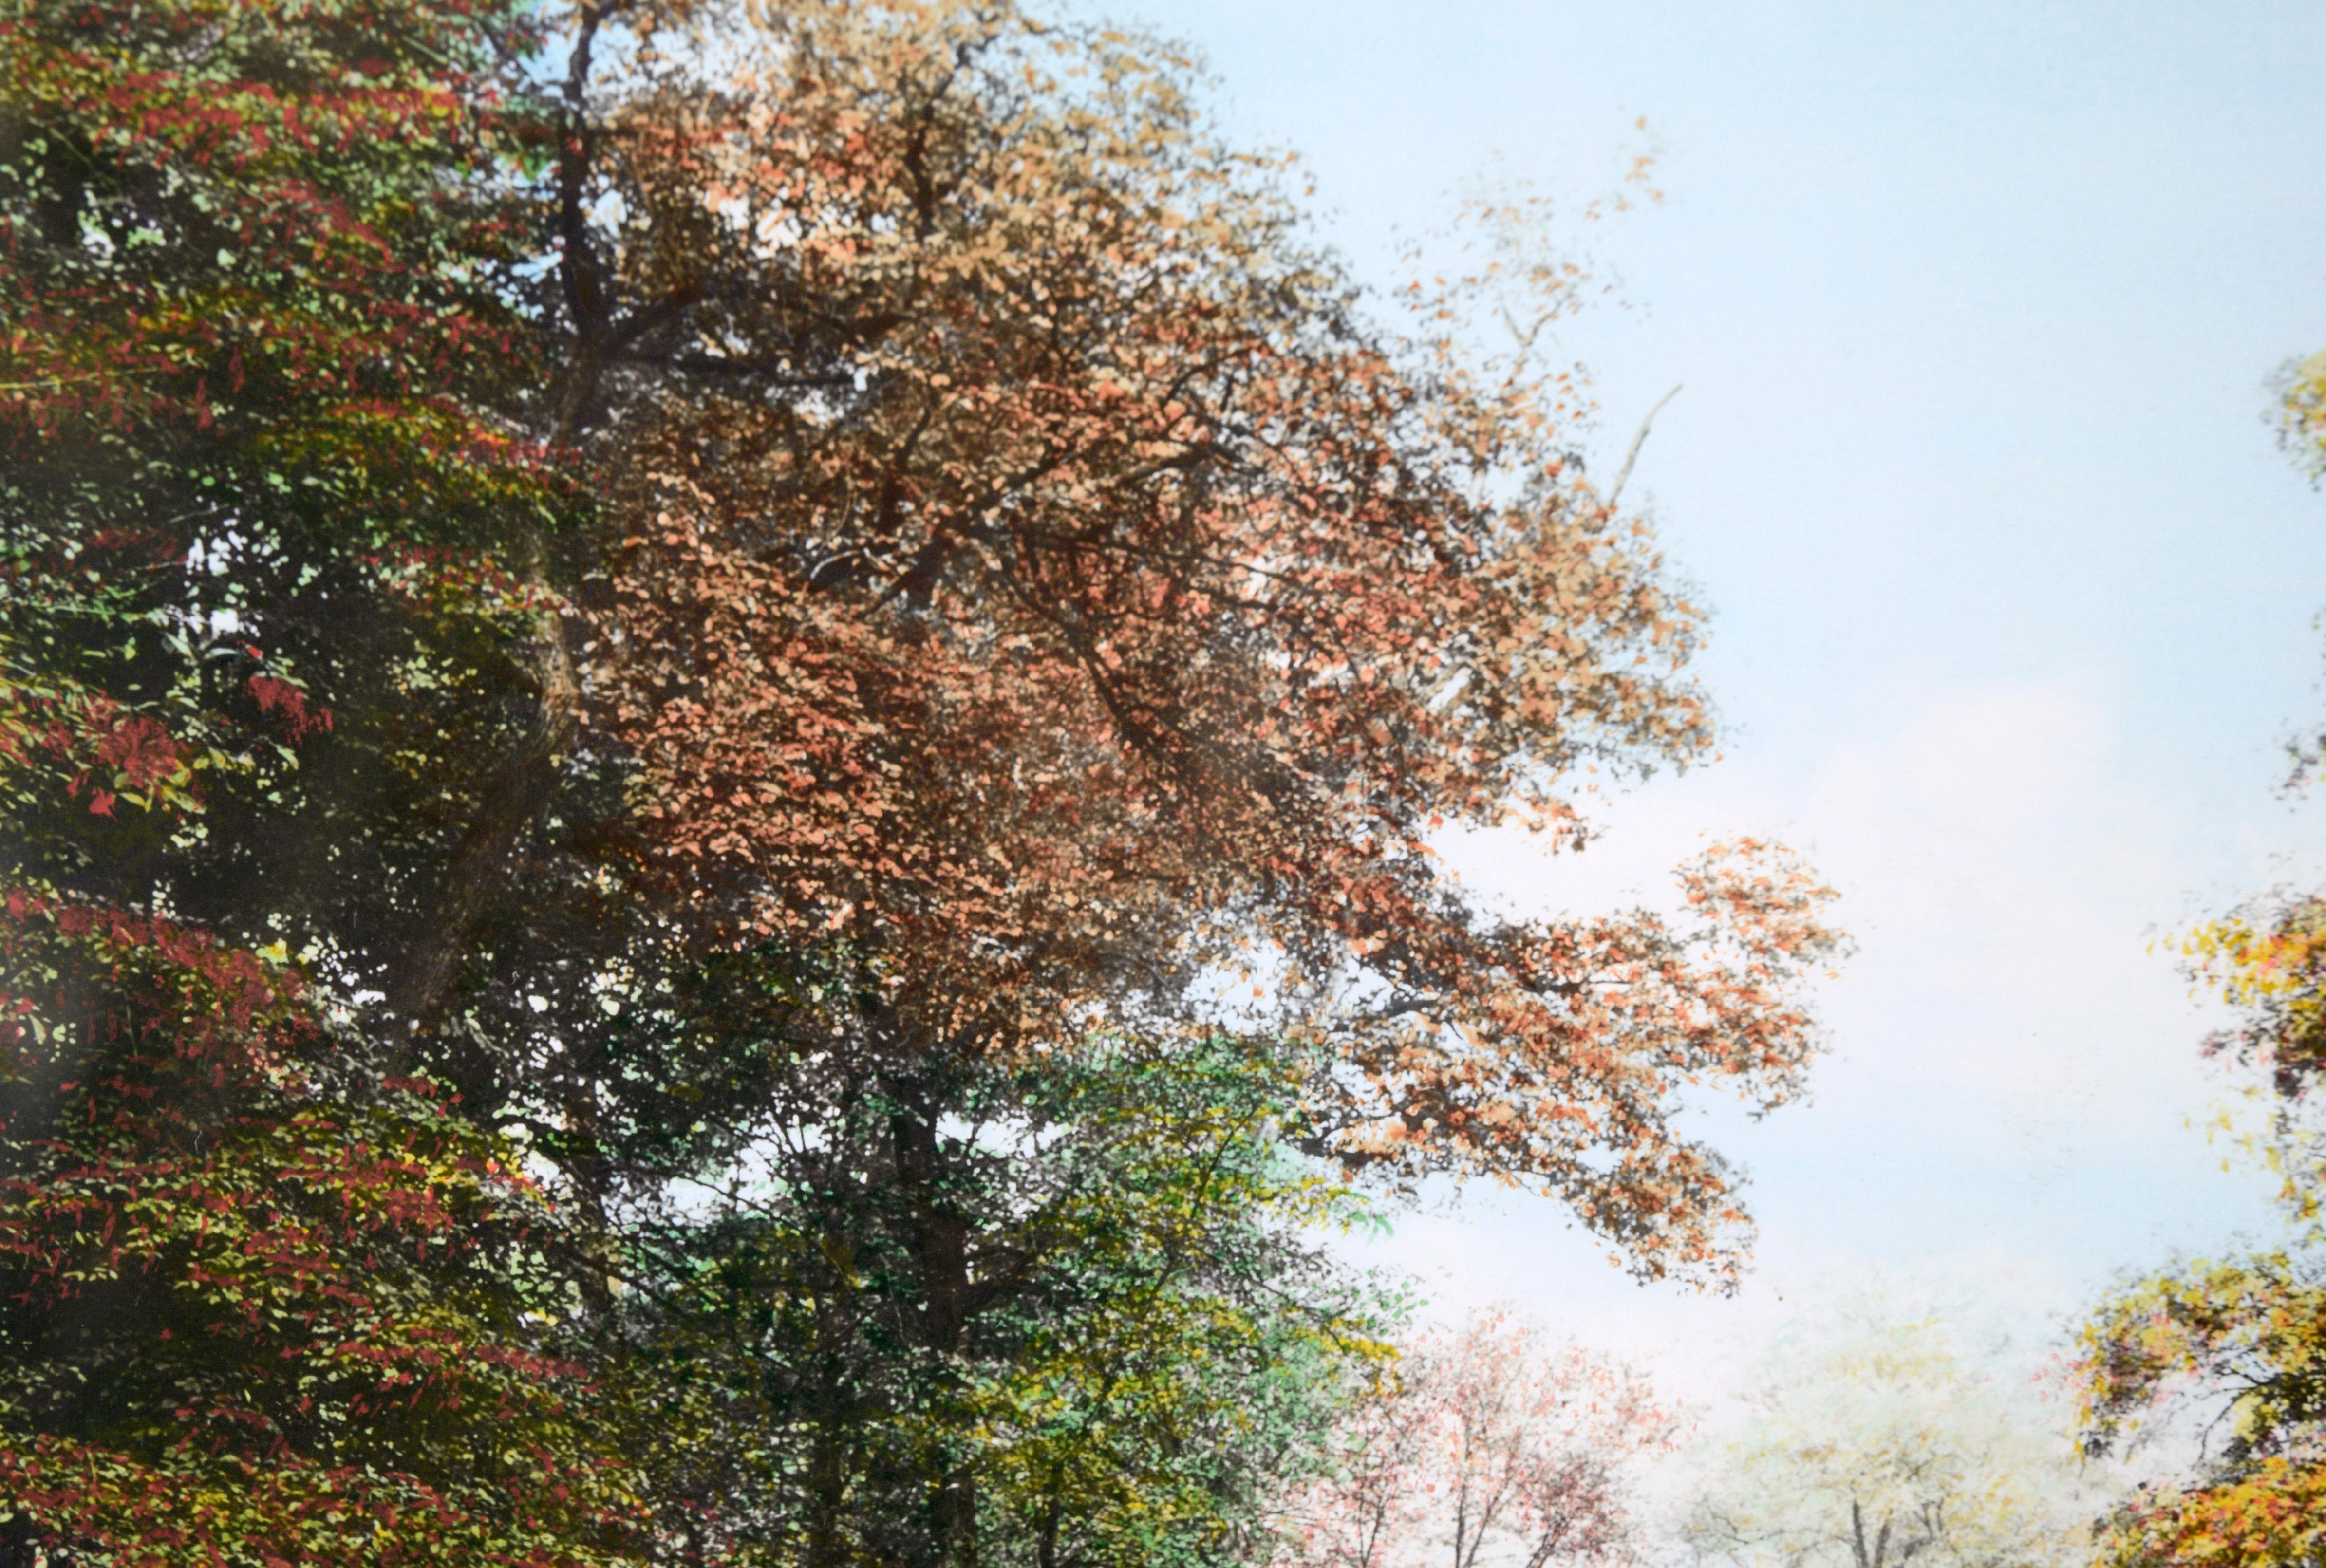 Photographie colorée à la main « A Perkiomen October »

Photographie en noir et blanc d'un étang coloré à la peinture à l'huile par Wallace Whiting (américain, 1861 - 1941). Le spectateur regarde un étang en verre qui reflète le paysage. L'étang est